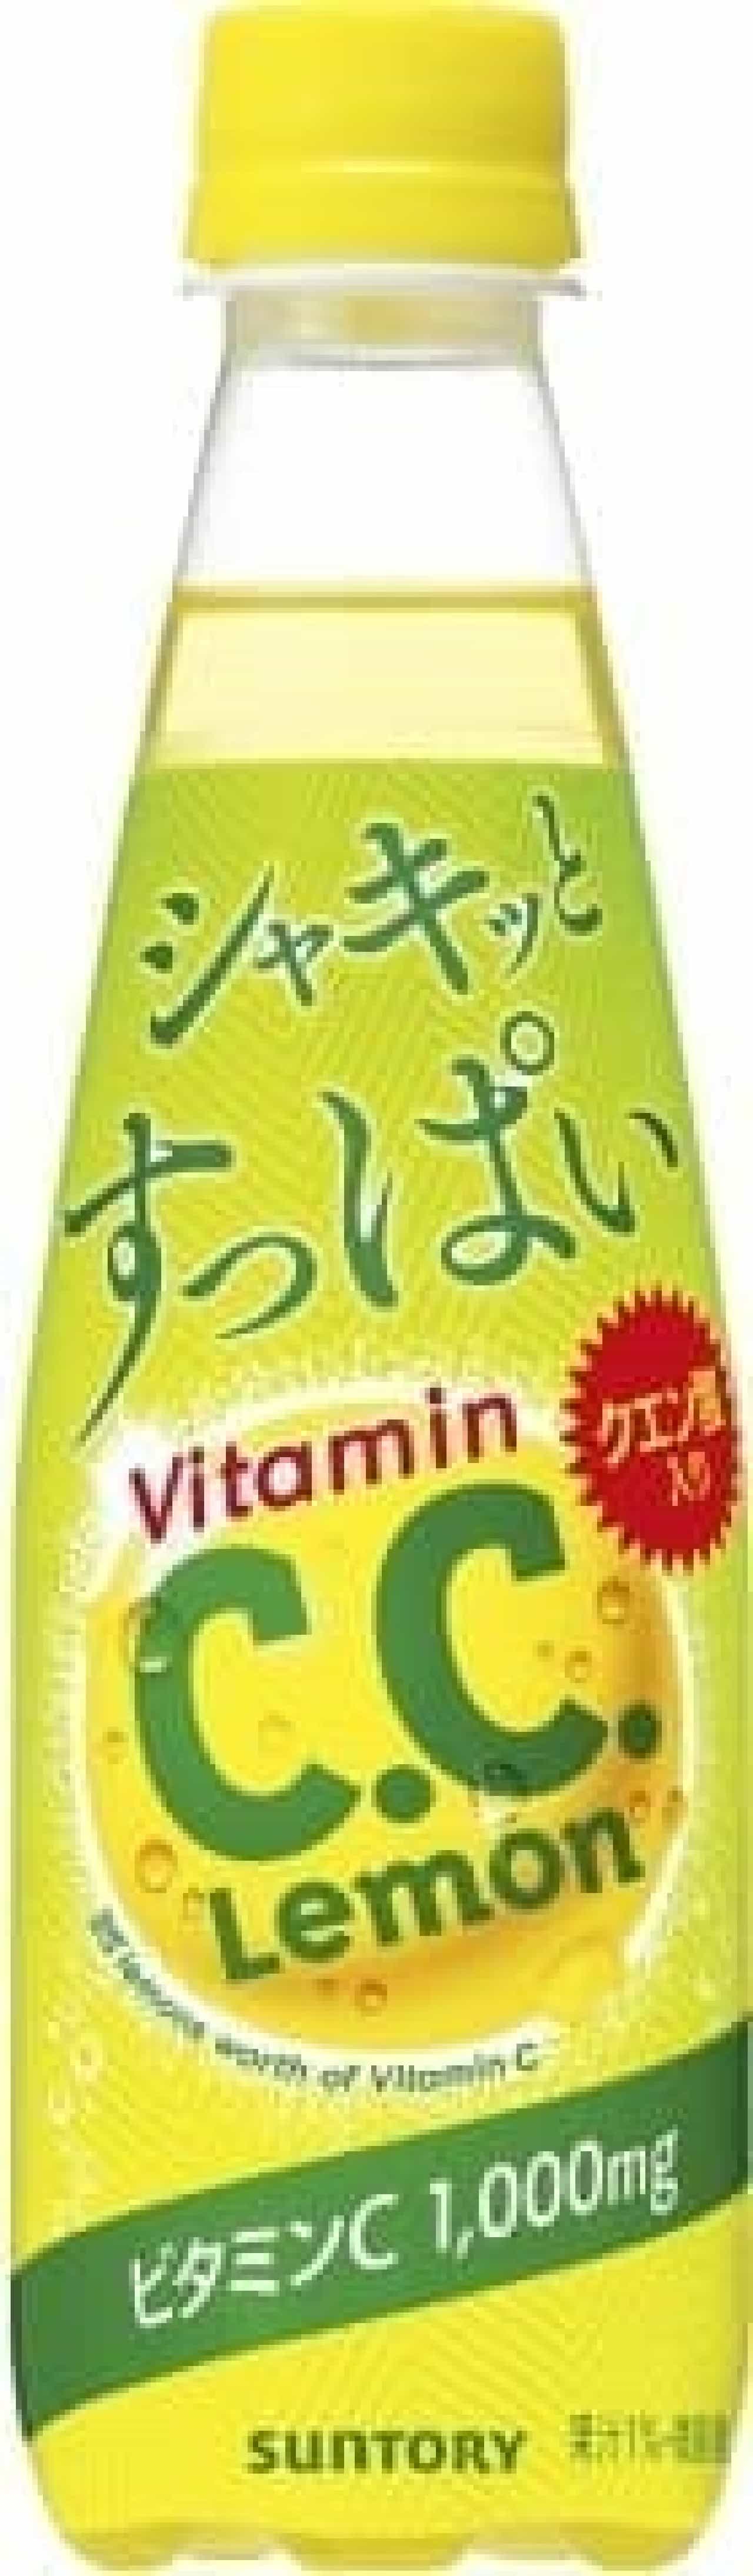 サントリー食品インターナショナル「シャキッとすっぱいC.C.レモン」